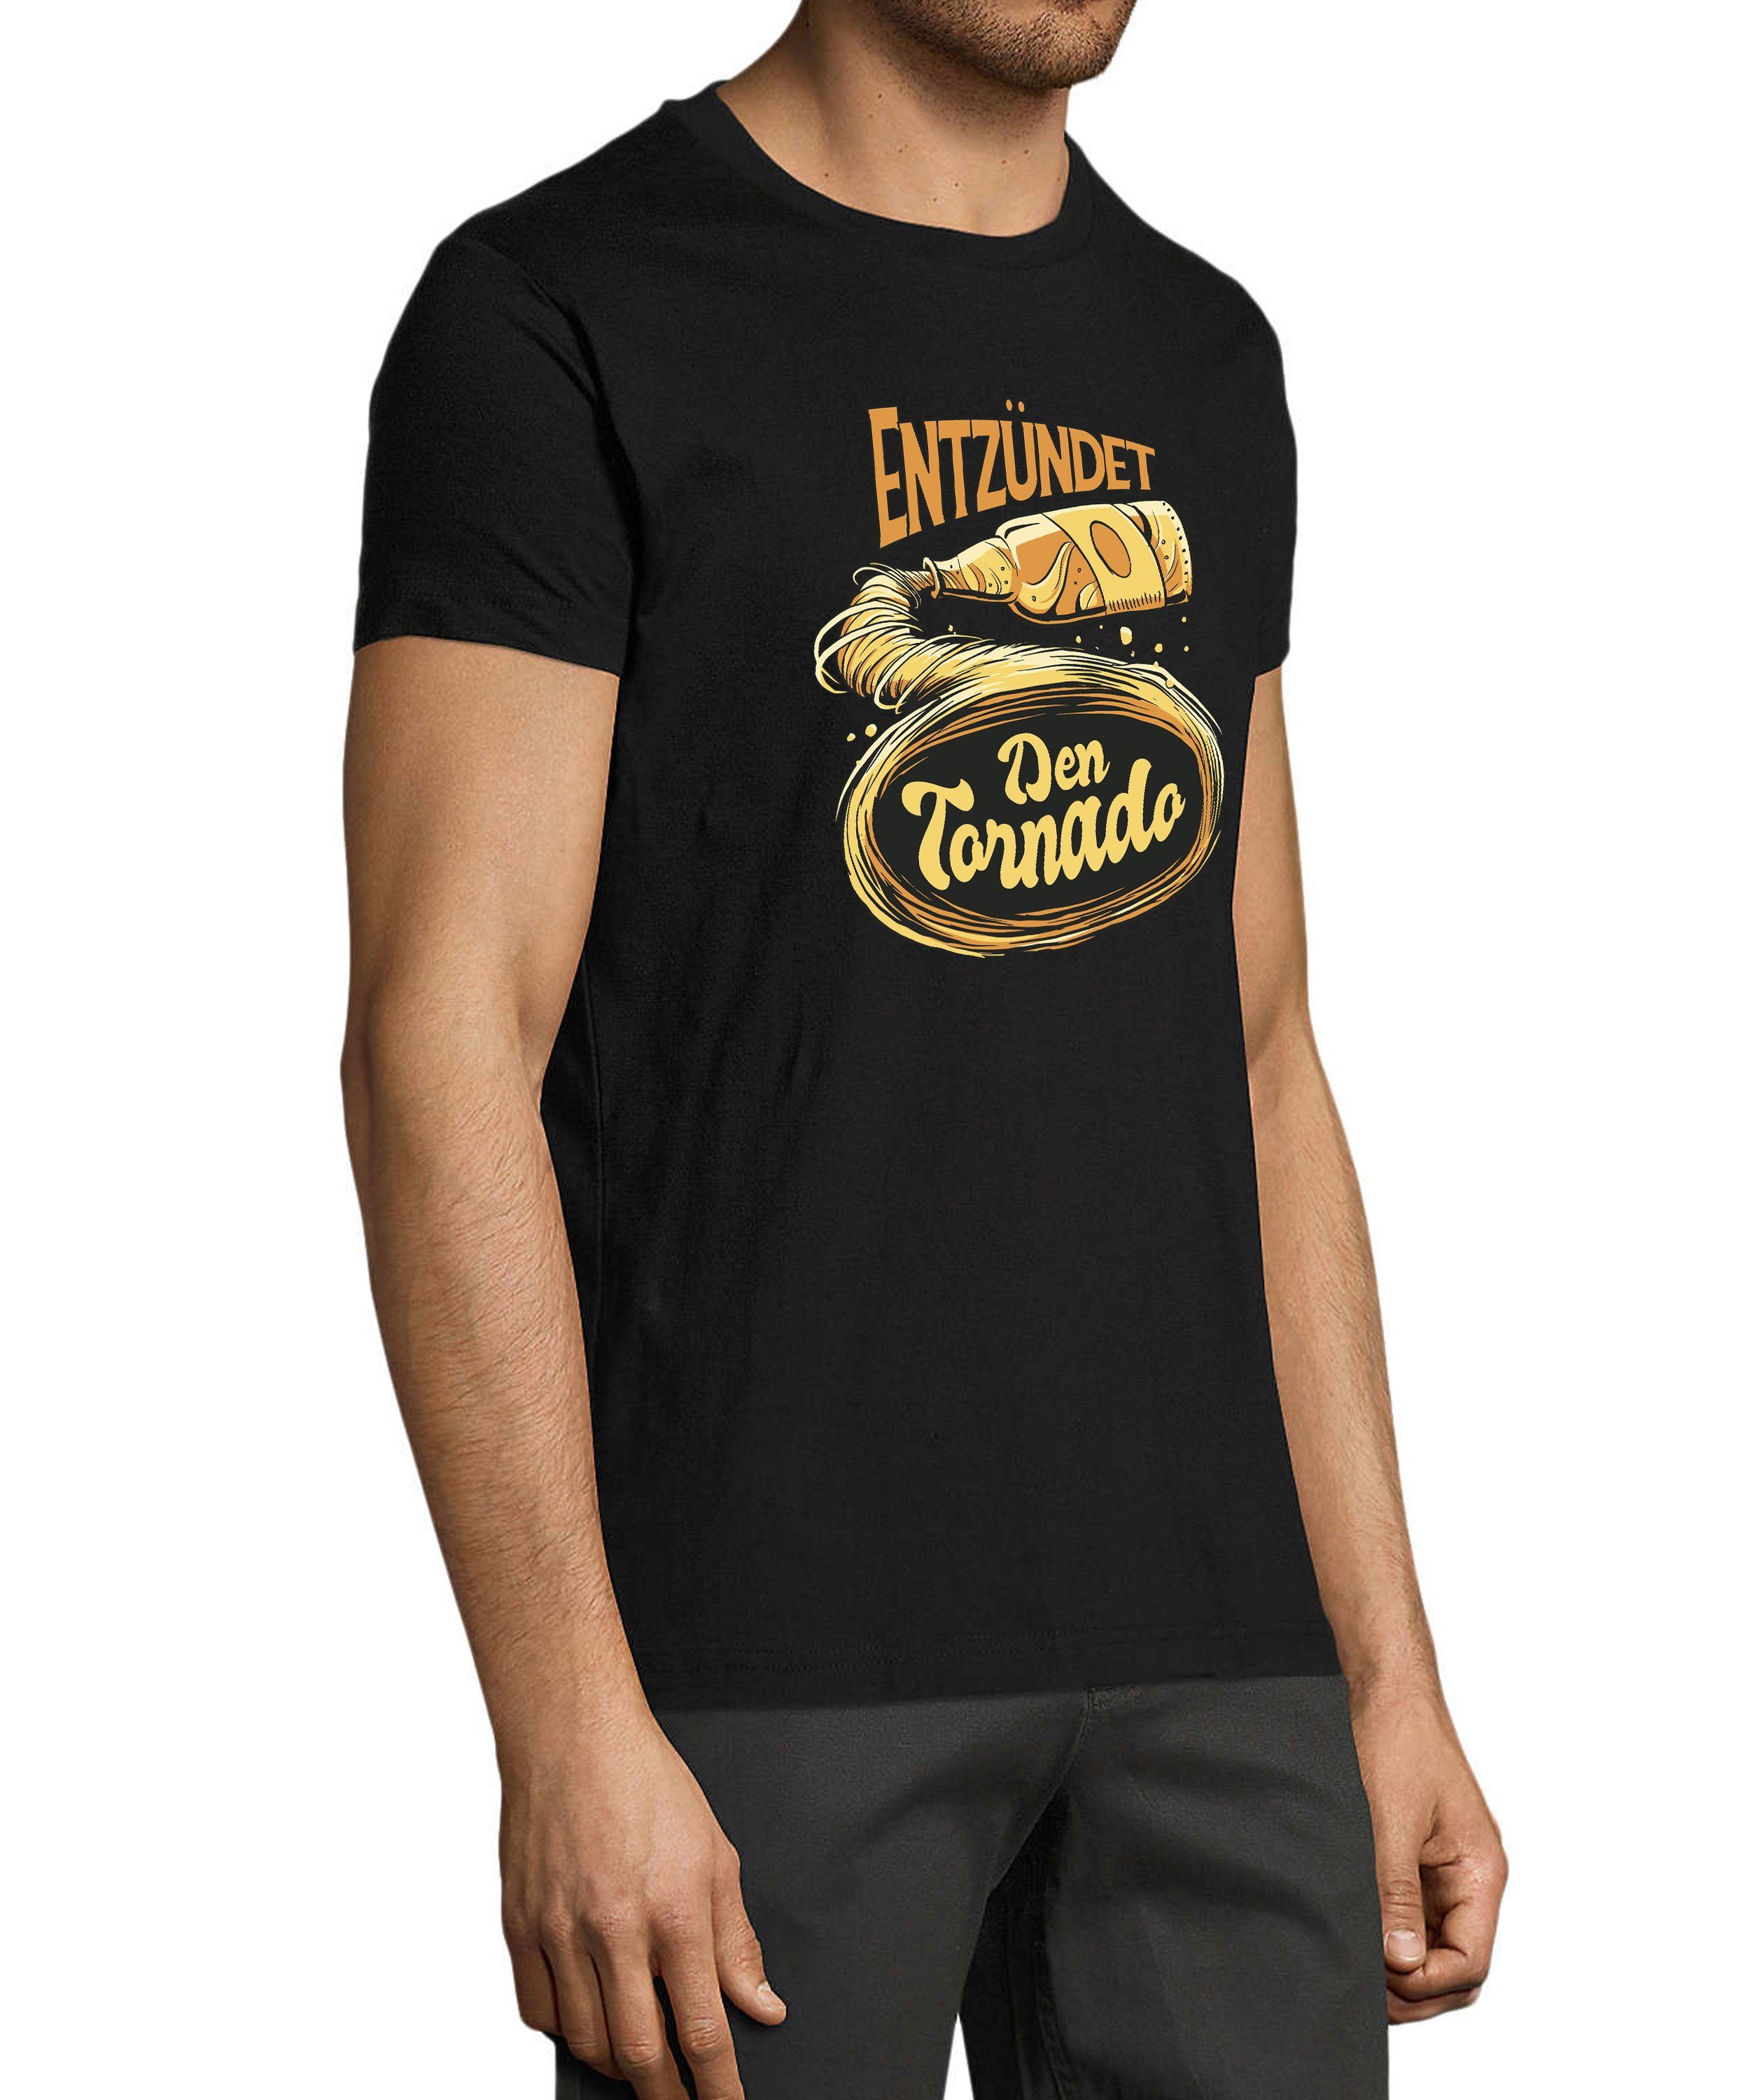 MyDesign24 T-Shirt Herren Fun Regular schwarz mit Shirt Fit, Oktoberfest Print - Tornado Trinkshirt Aufdruck i302 Baumwollshirt Entzündet den